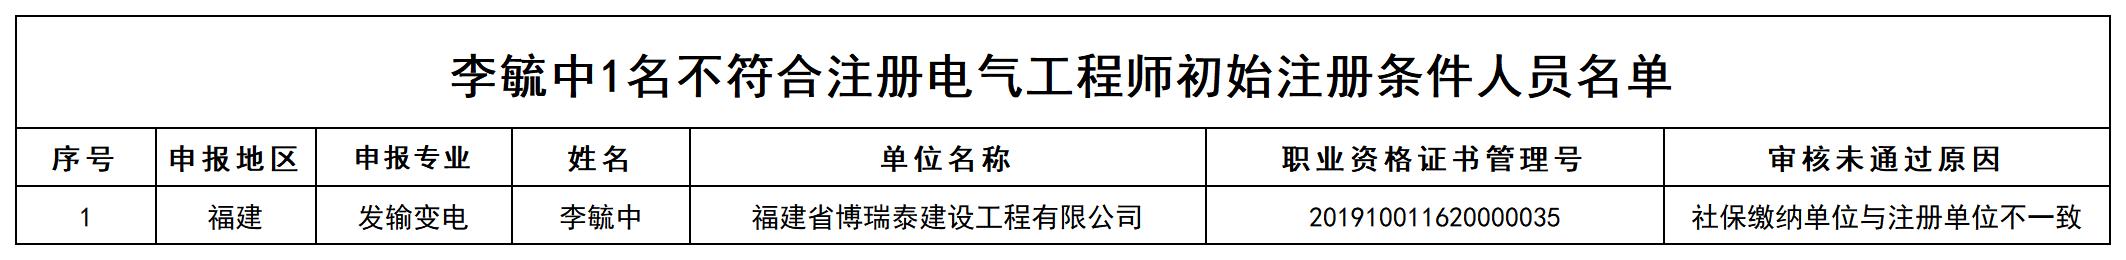 李毓中1名不符合注册电气工程师初始注册条件人员名单_打印结果.jpg